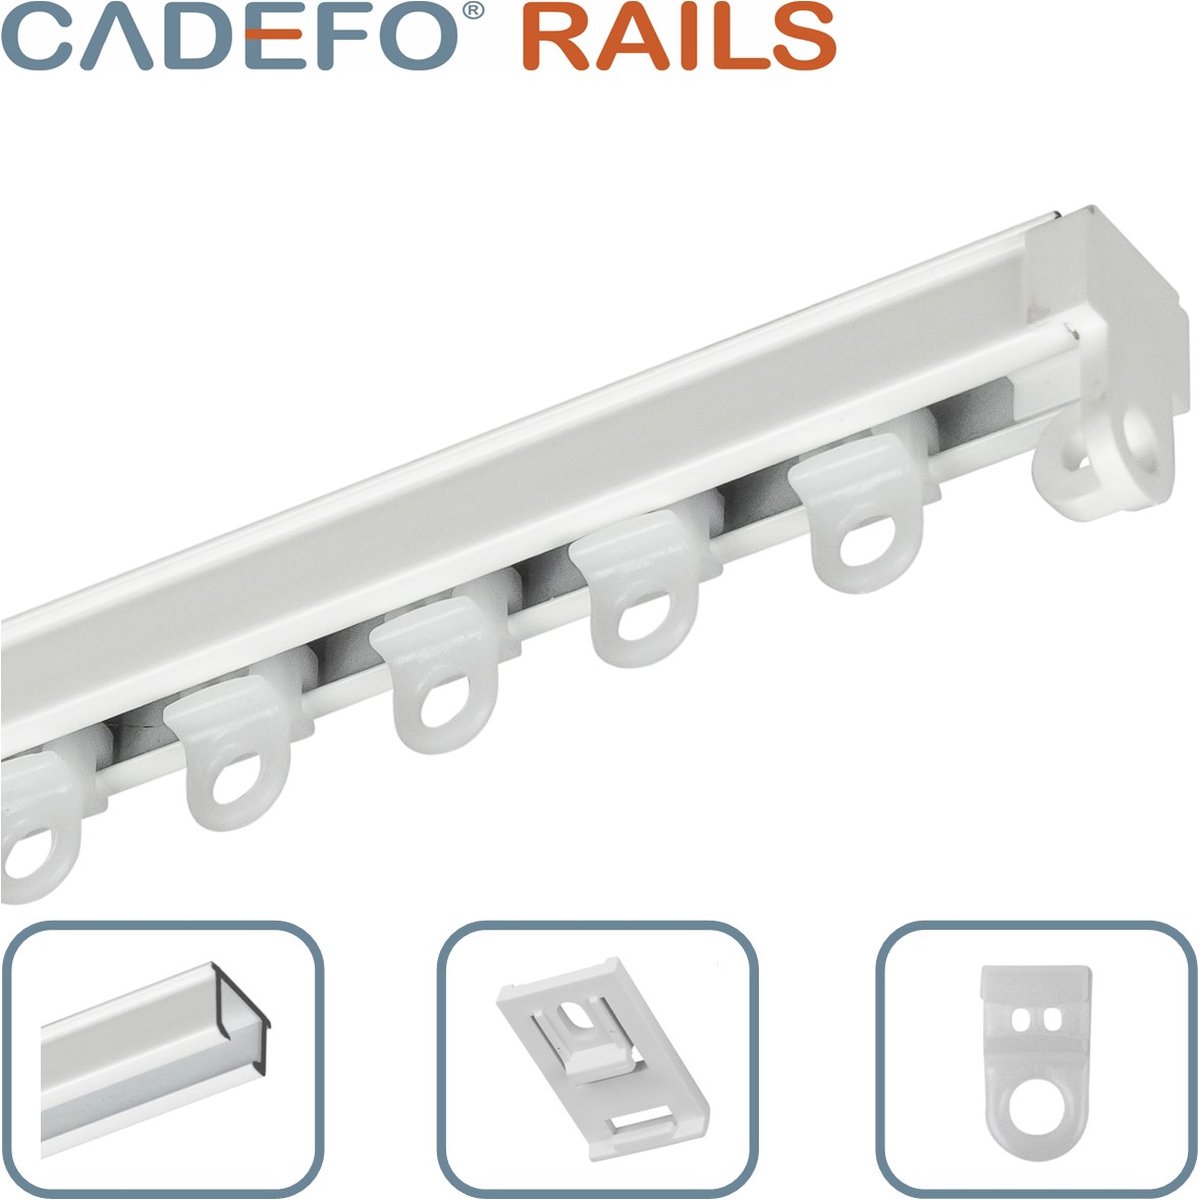 CADEFO RAILS (101 - 150 cm) Gordijnrails - Compleet op maat! - UIT 1 STUK - Leverbaar tot 6 meter - Plafondbevestiging - Lengte 123 cm